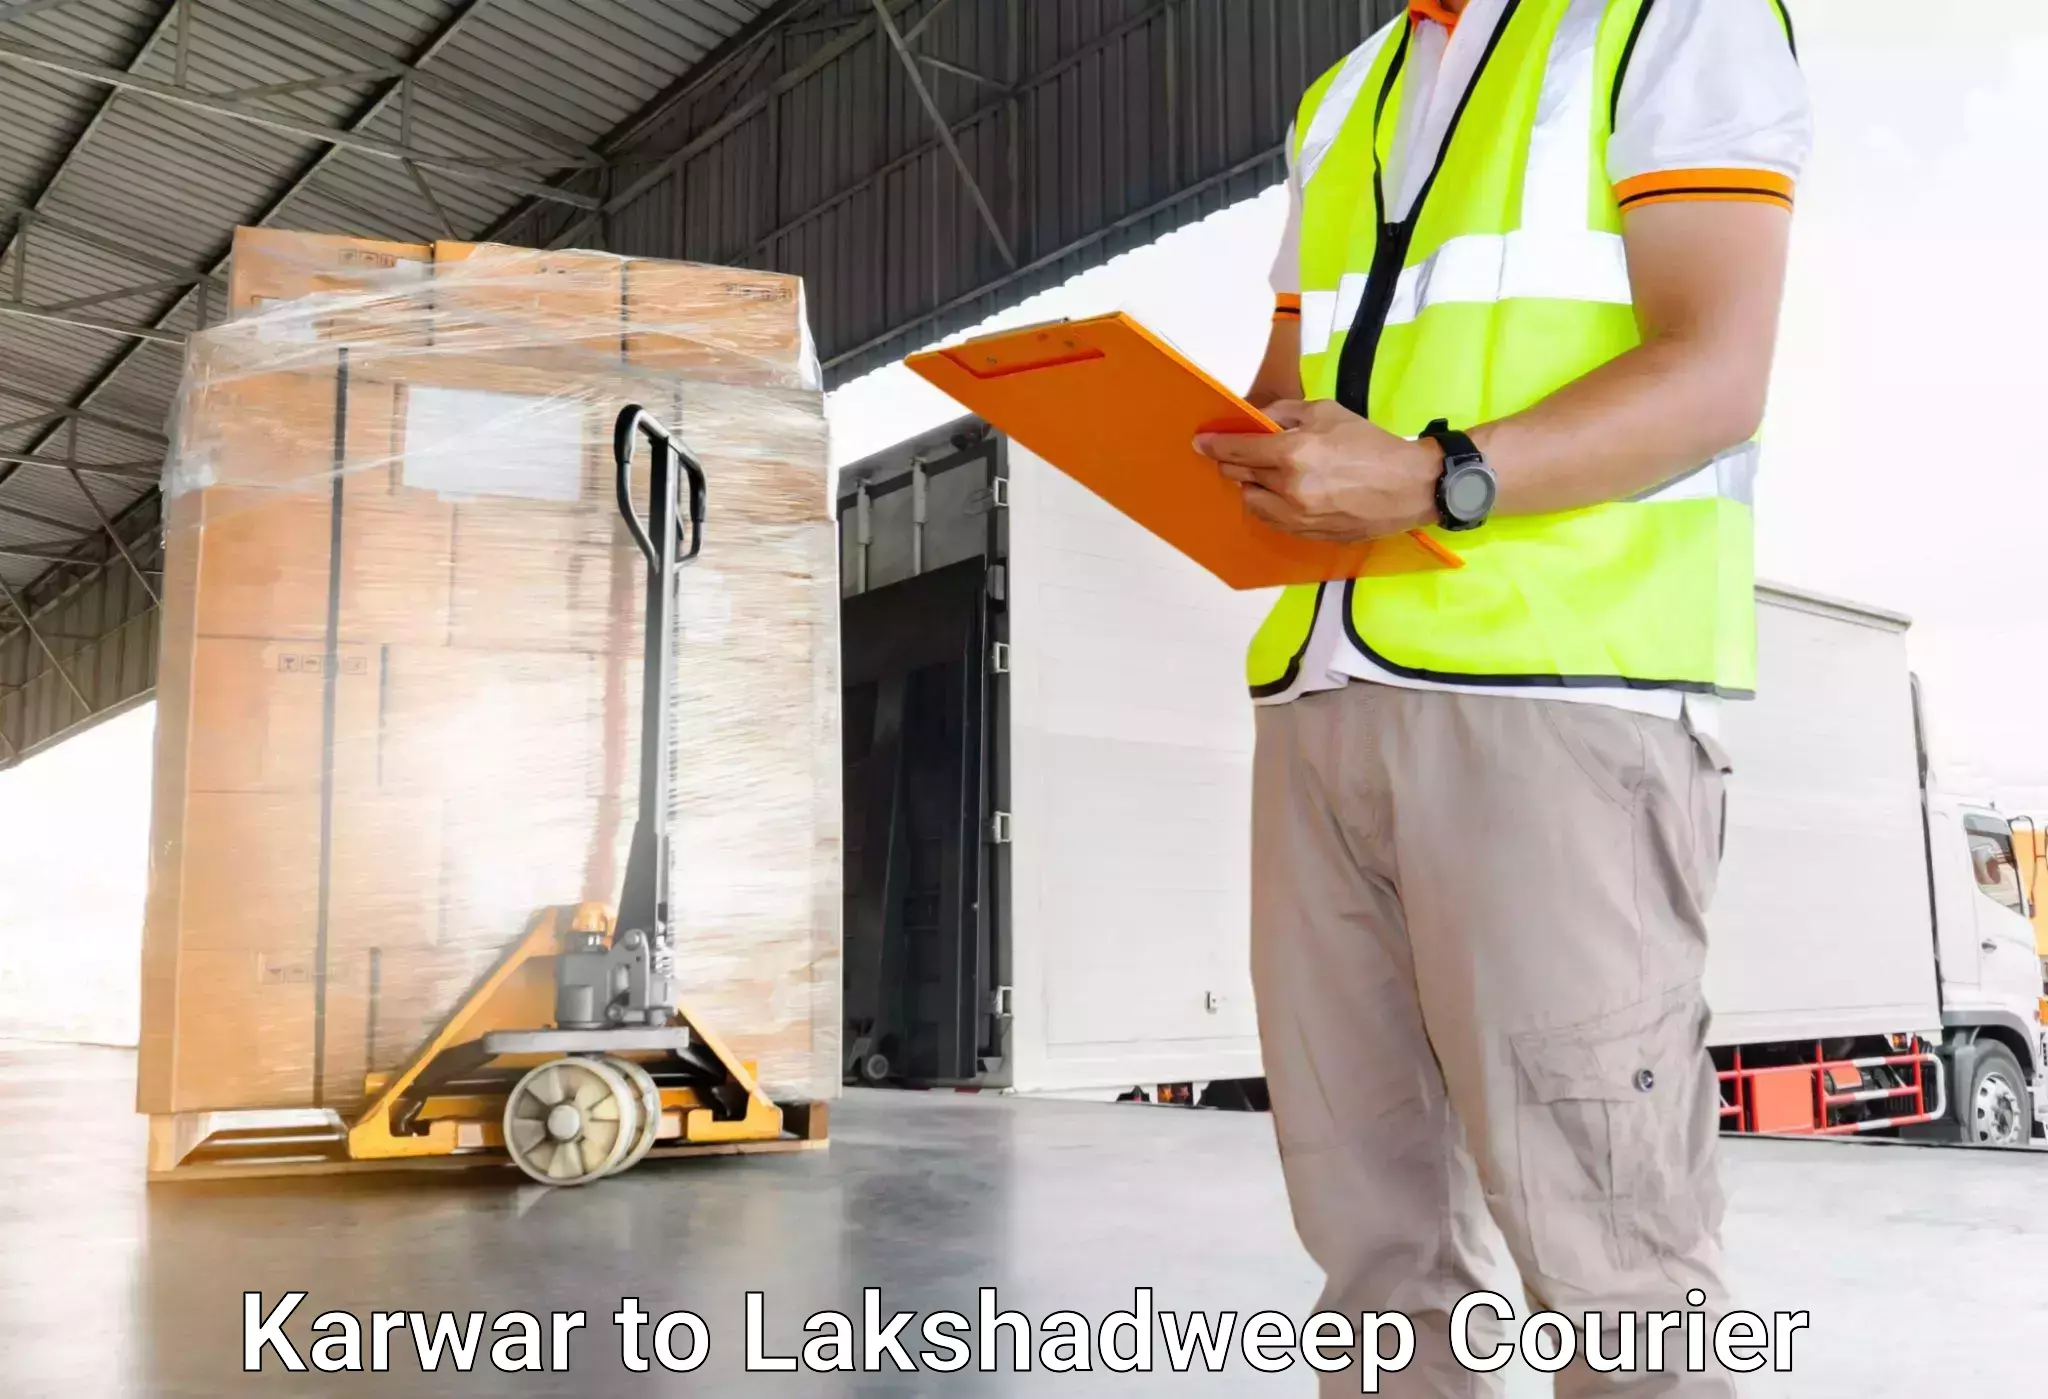 Luggage delivery network Karwar to Lakshadweep